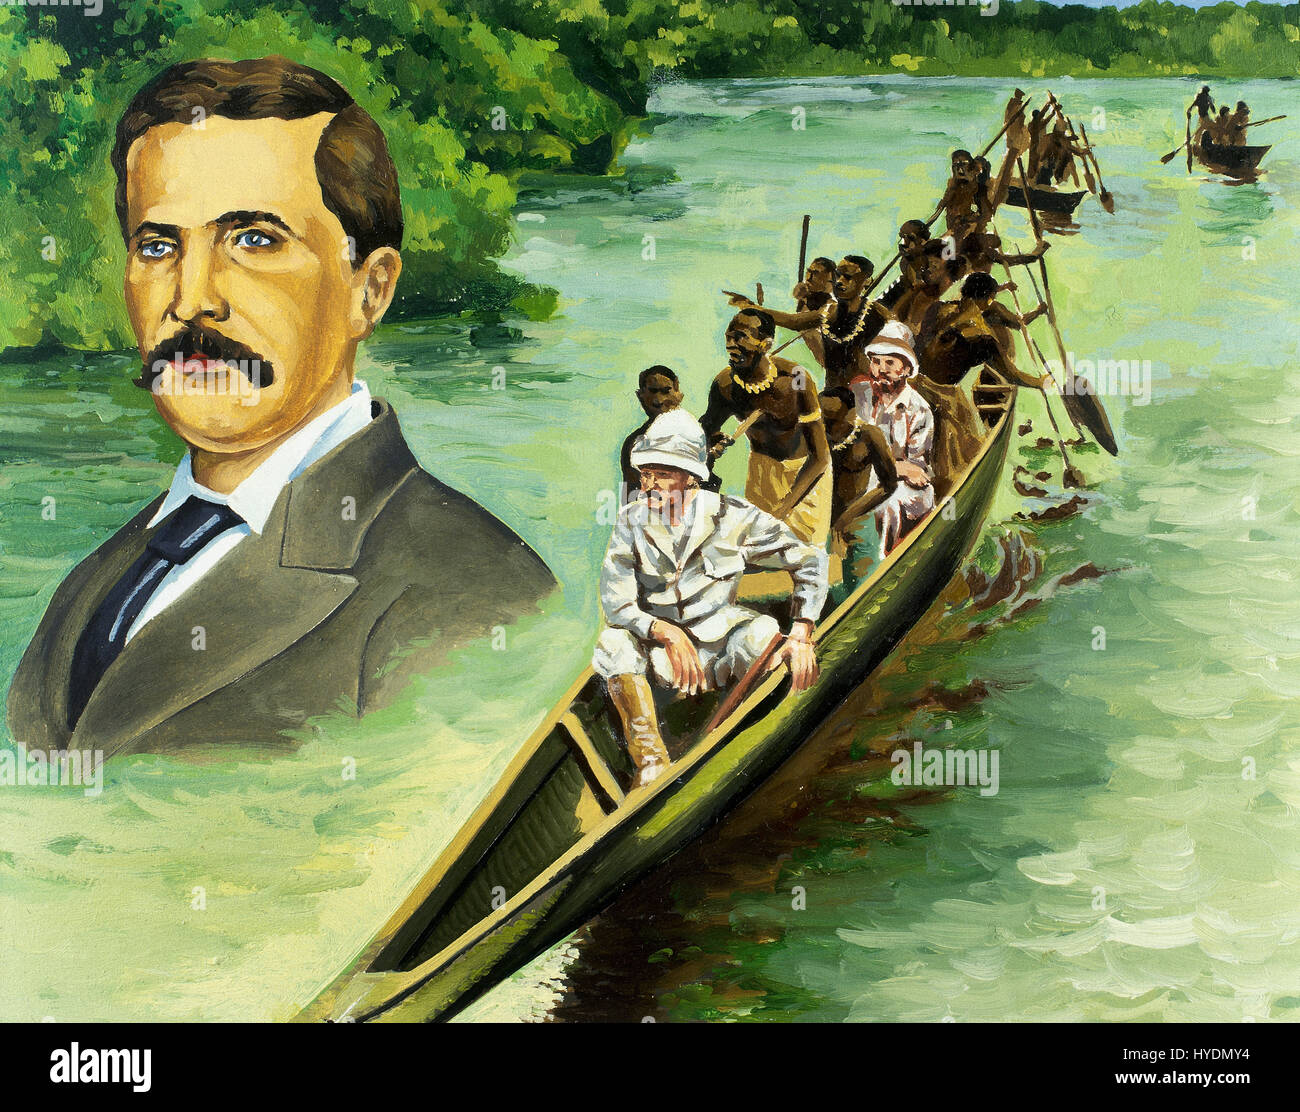 Afrika. Der britische Entdecker Henry Morton Stanley (1799-1869) und David Livingstone (1813-1873) in einem Kanu auf den Kongo-Fluss. Aquarell. Stockfoto